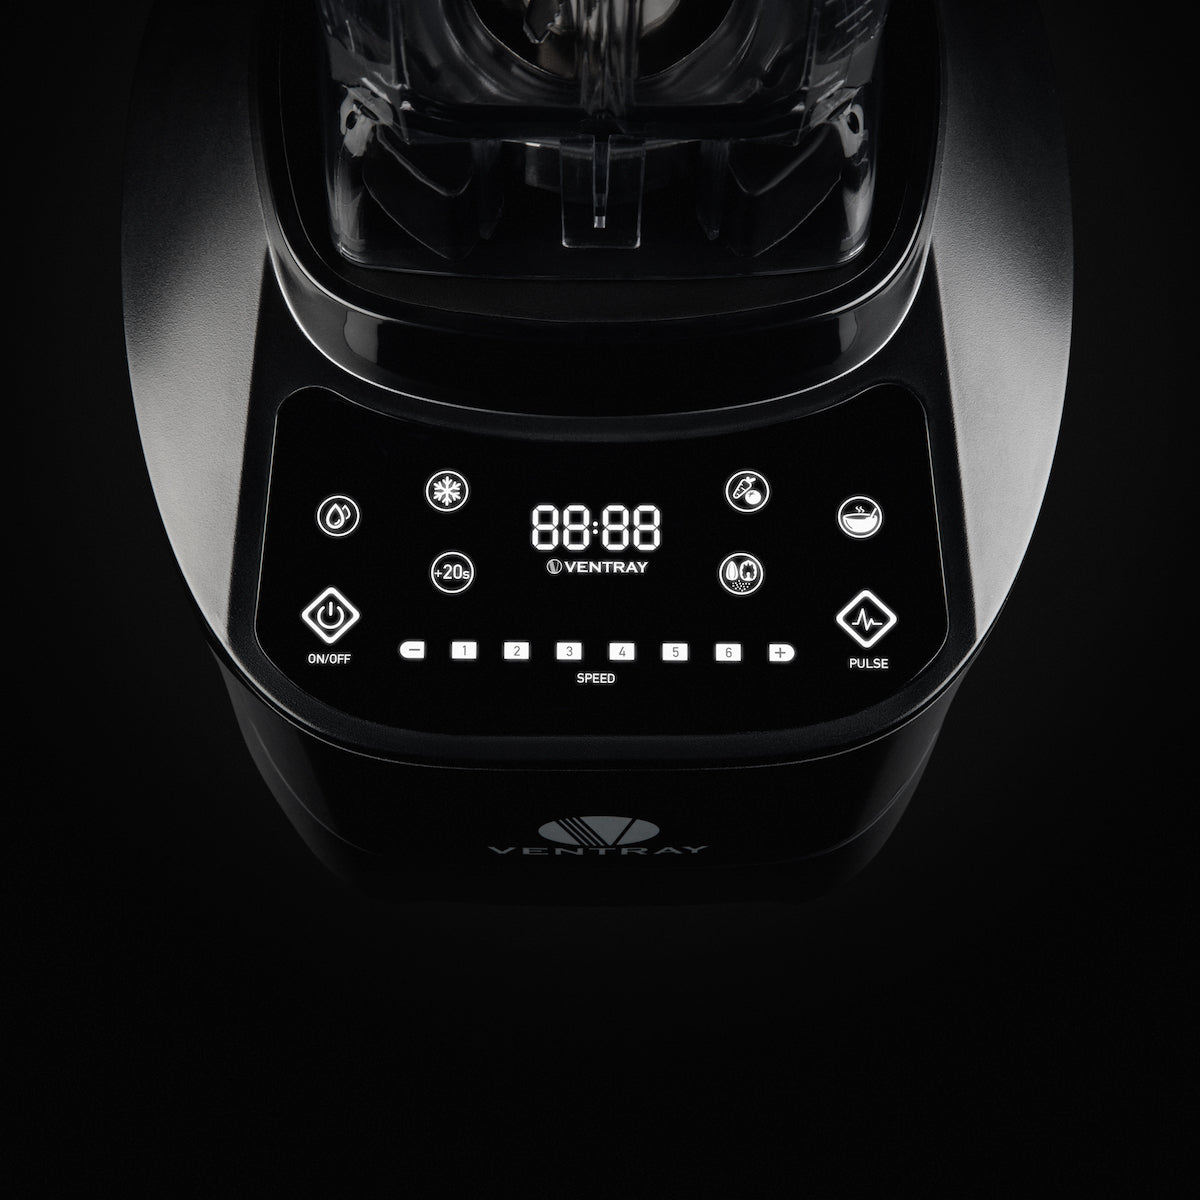 Ventray Pro 600 High Power Professional Blender 1500-Watt 8-Speed 5